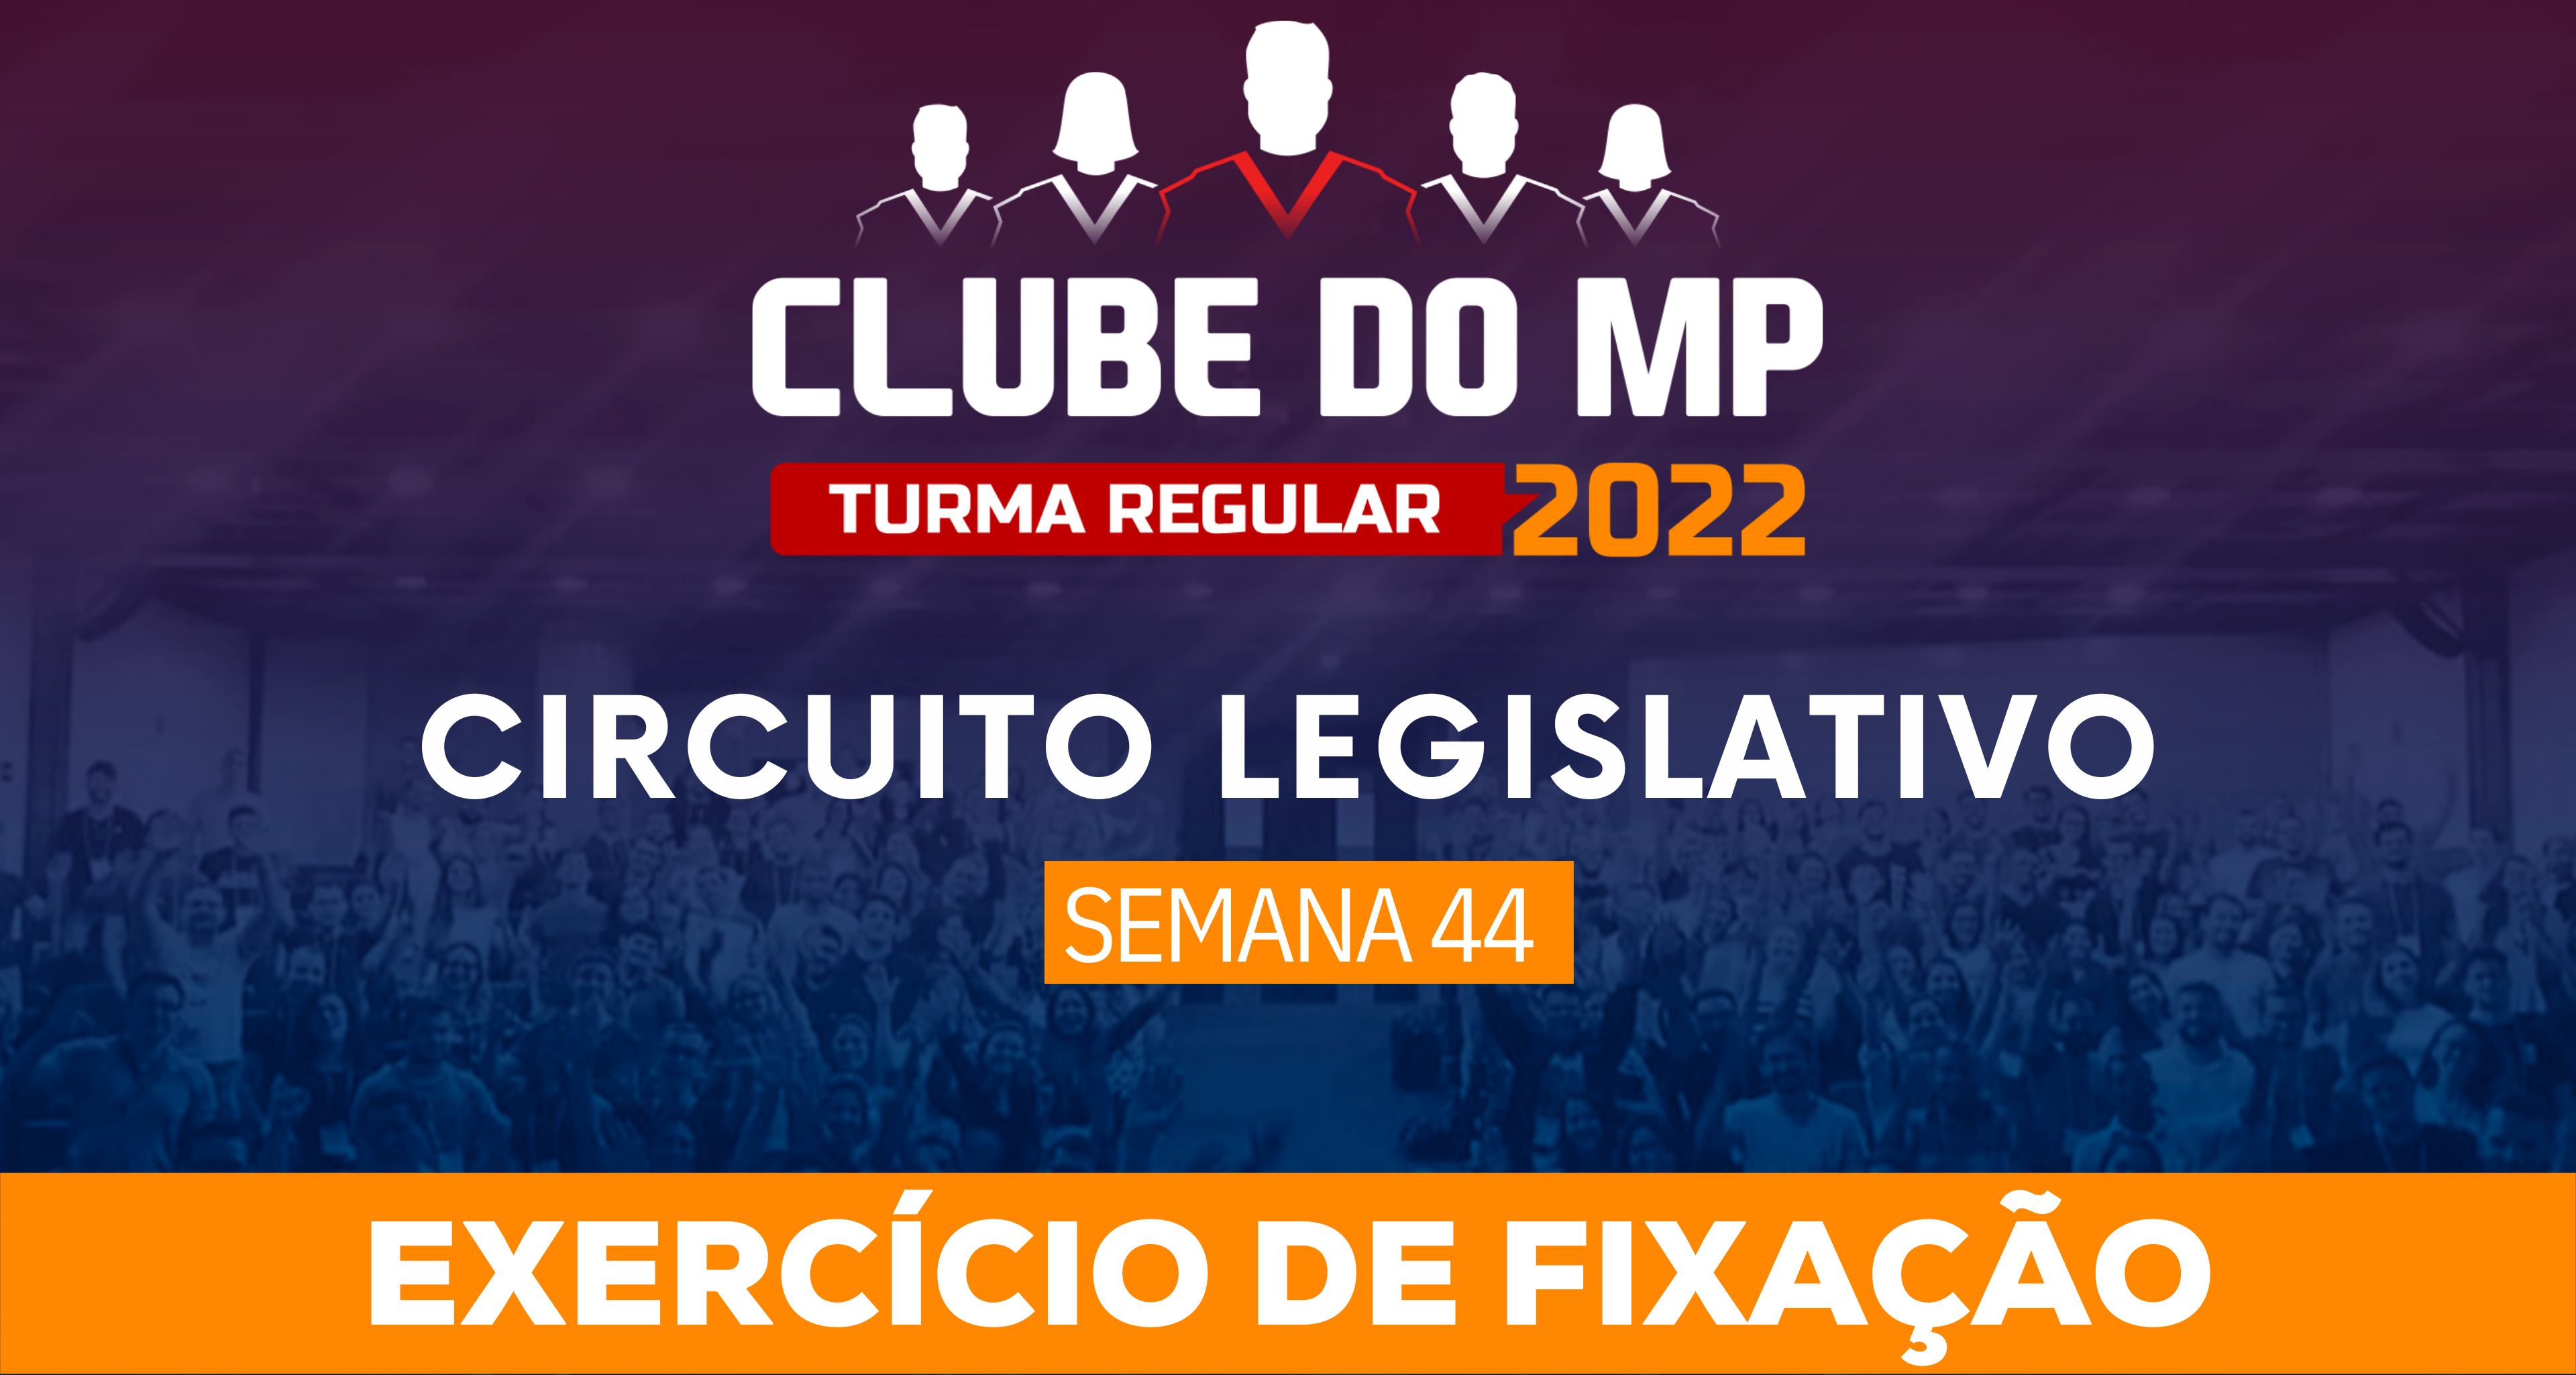 Circuito Legislativo 2022.1 (Clube do MP - Semana 44)